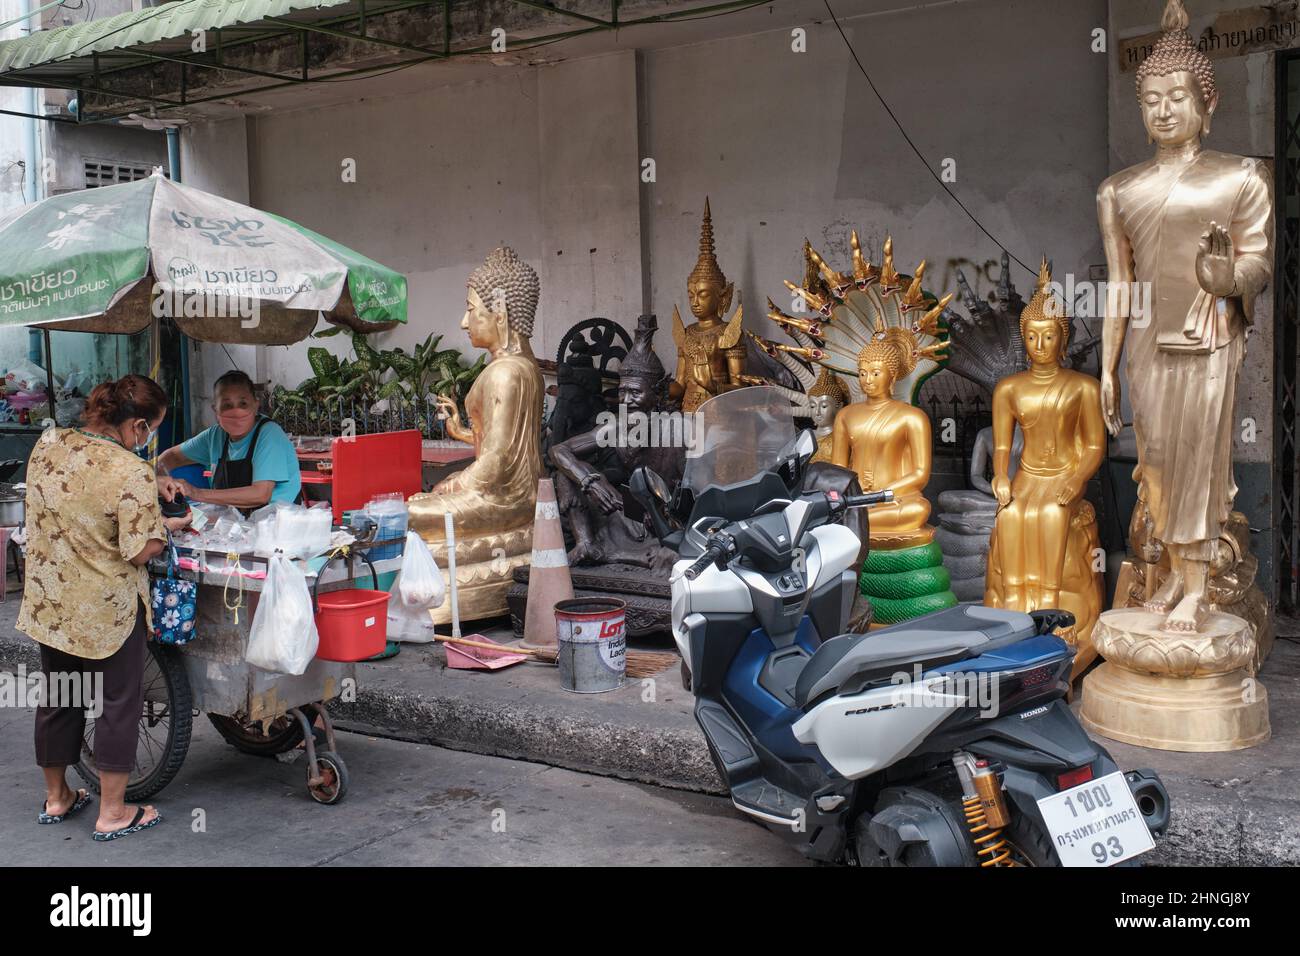 Ein Street-Food-Händler, der von ihrem Wagen aus vor verschiedenen Buddha-Statuen eines nahe gelegenen Ladens für religiöse Objekte operiert; Bangkok, Thailand Stockfoto